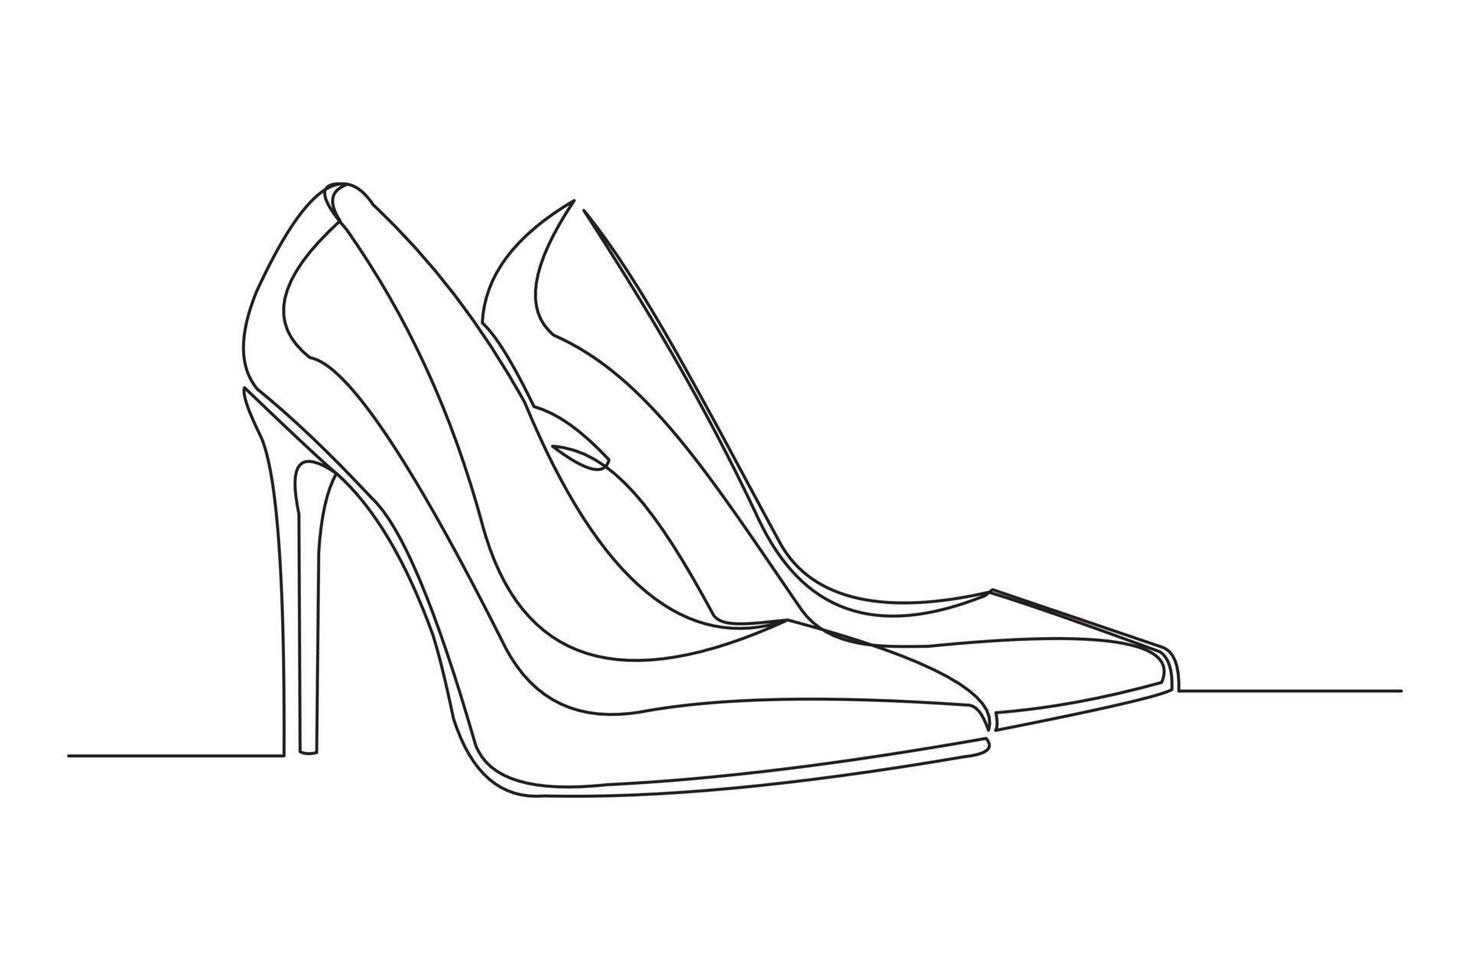 disegno a tratteggio continuo di scarpe col tacco alto da donna. una sola linea d'arte di belle scarpe da donna alla moda. illustrazione vettoriale